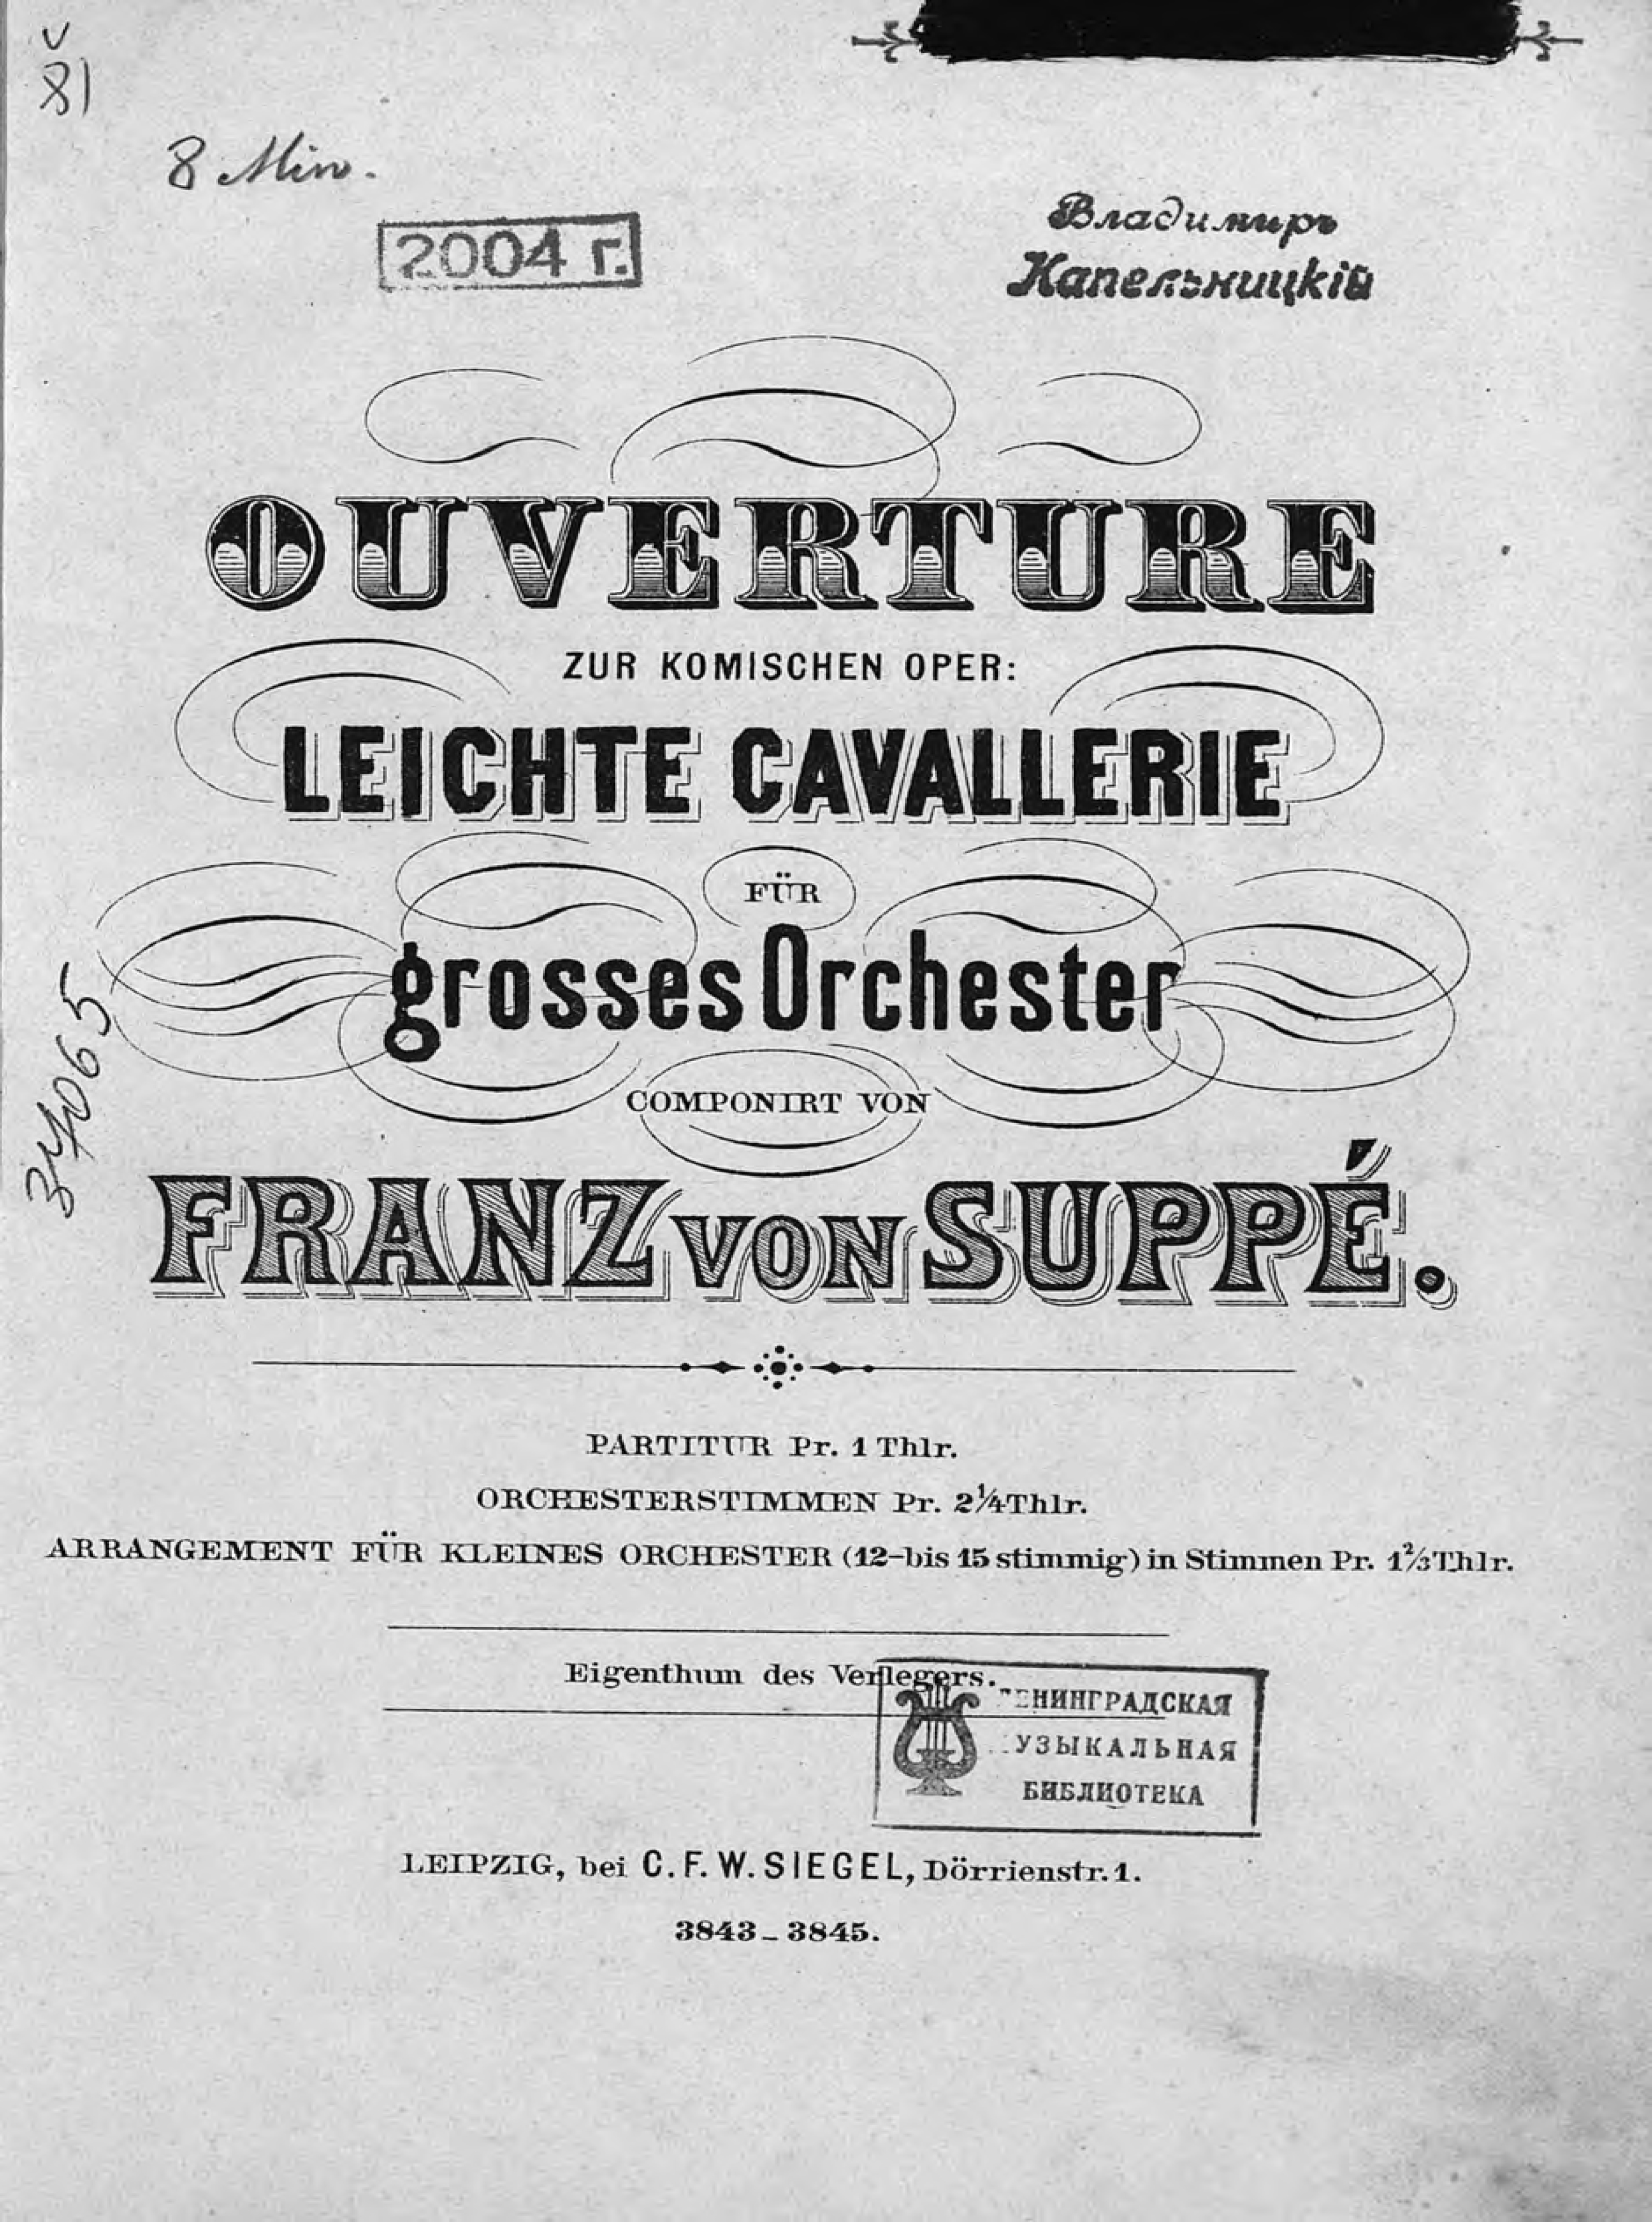 Ouverture zur komischen Oper"Leichte Cavallerie"